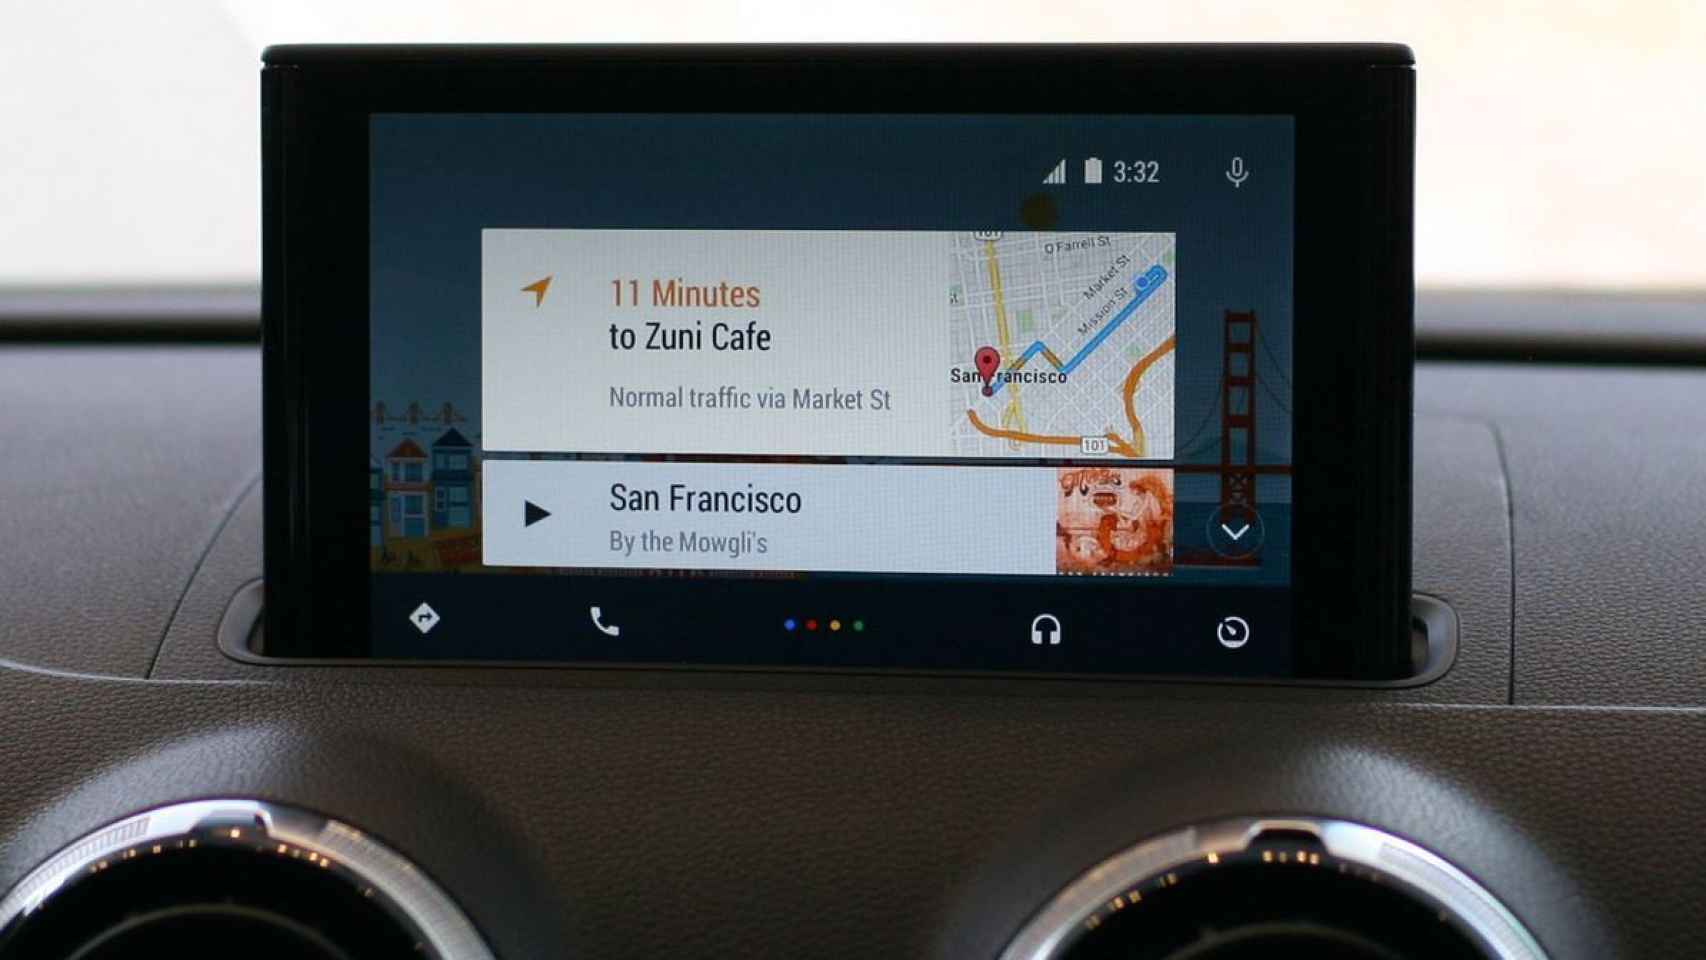 Android Auto: cómo conectar tu smartphone al coche